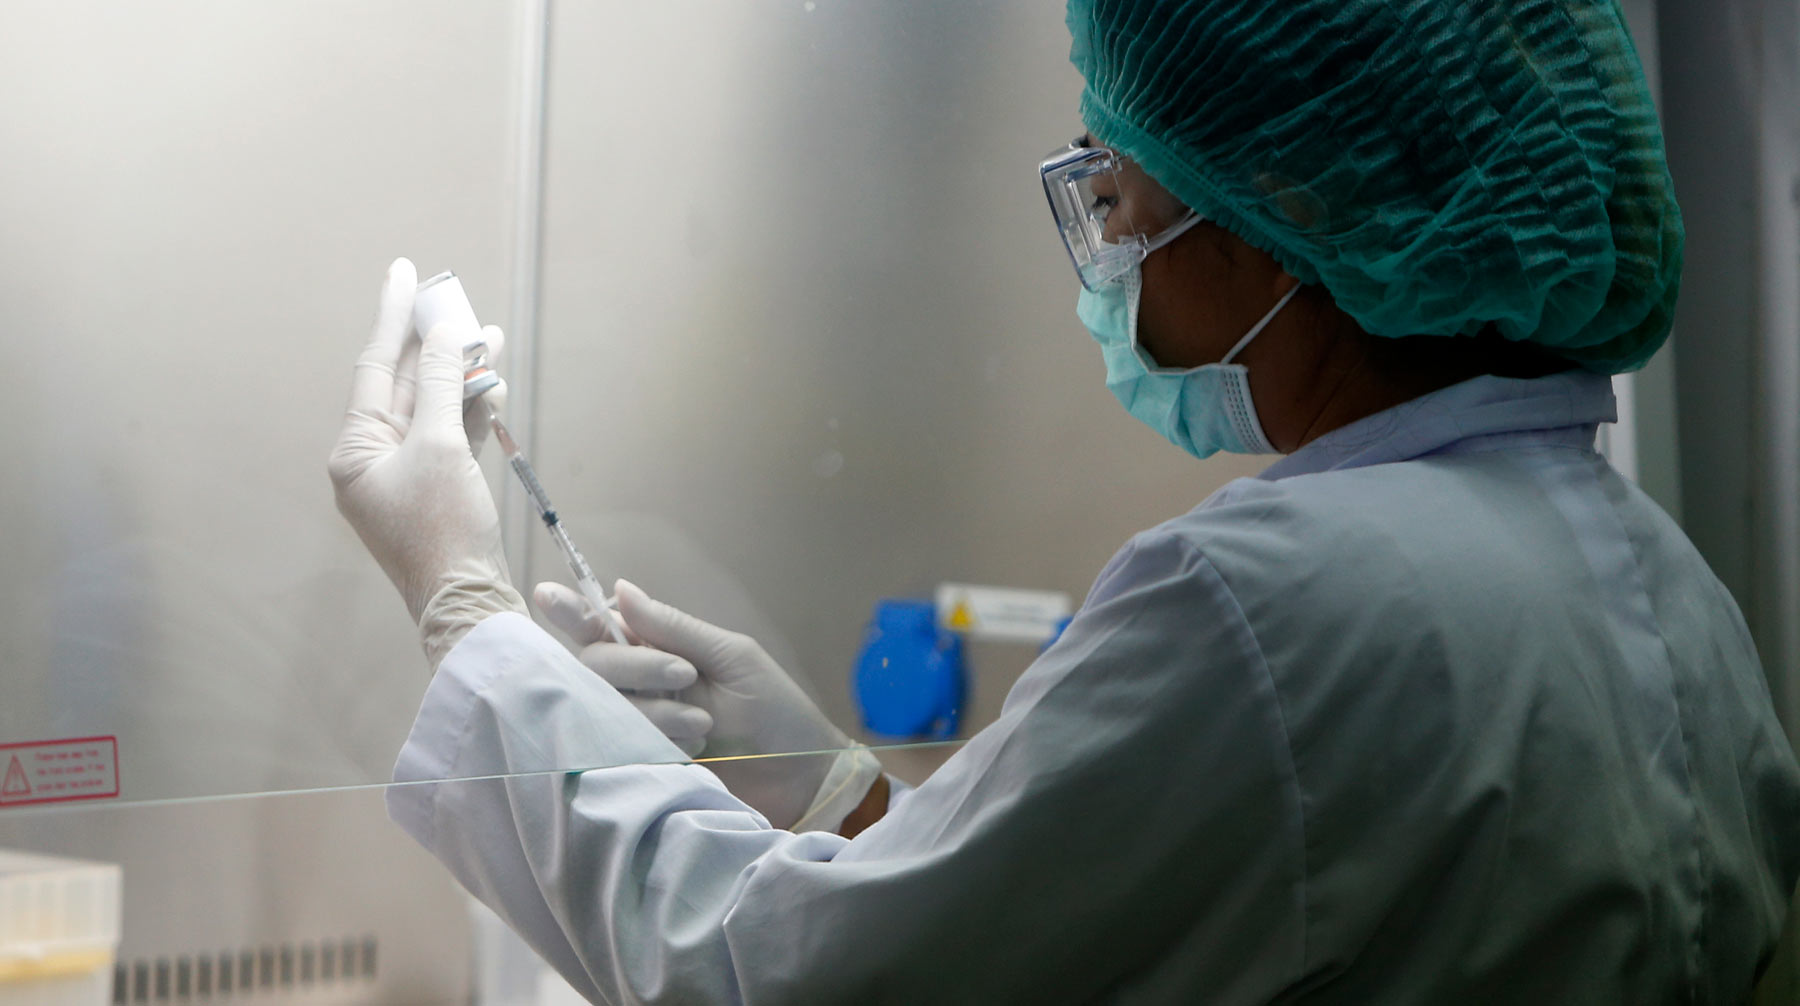 Принимавшие участие в тестировании препарата добровольцы получили иммунитет от инфекции и чувствуют себя нормально Фото: © Global Look Press / Chaiwat Subprasom